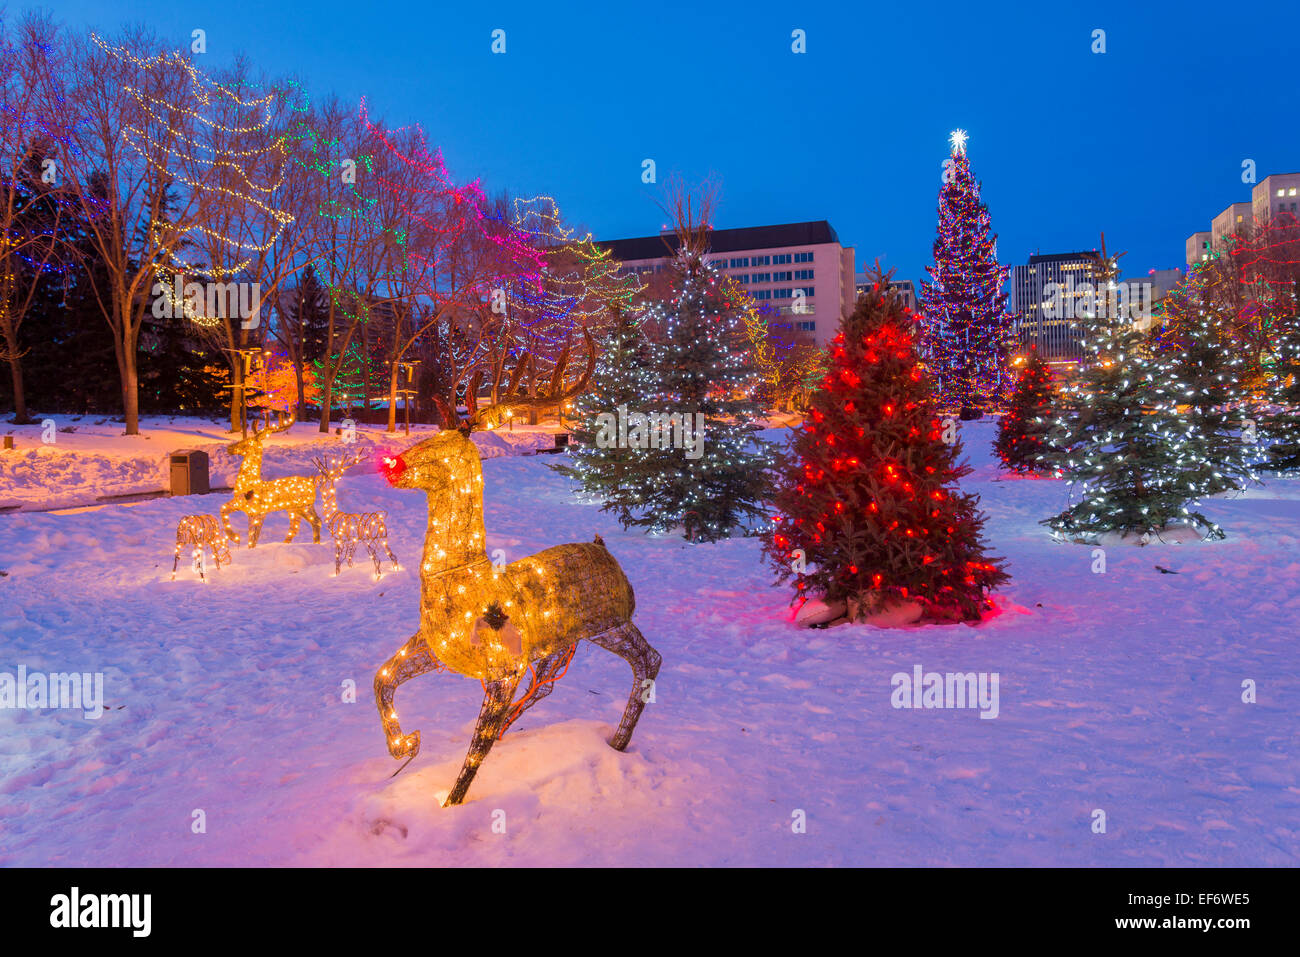 Weihnachten-Display mit Rudolph das rote gerochene Rentier, Legislature Grounds, Edmonton, Alberta, Kanada Stockfoto